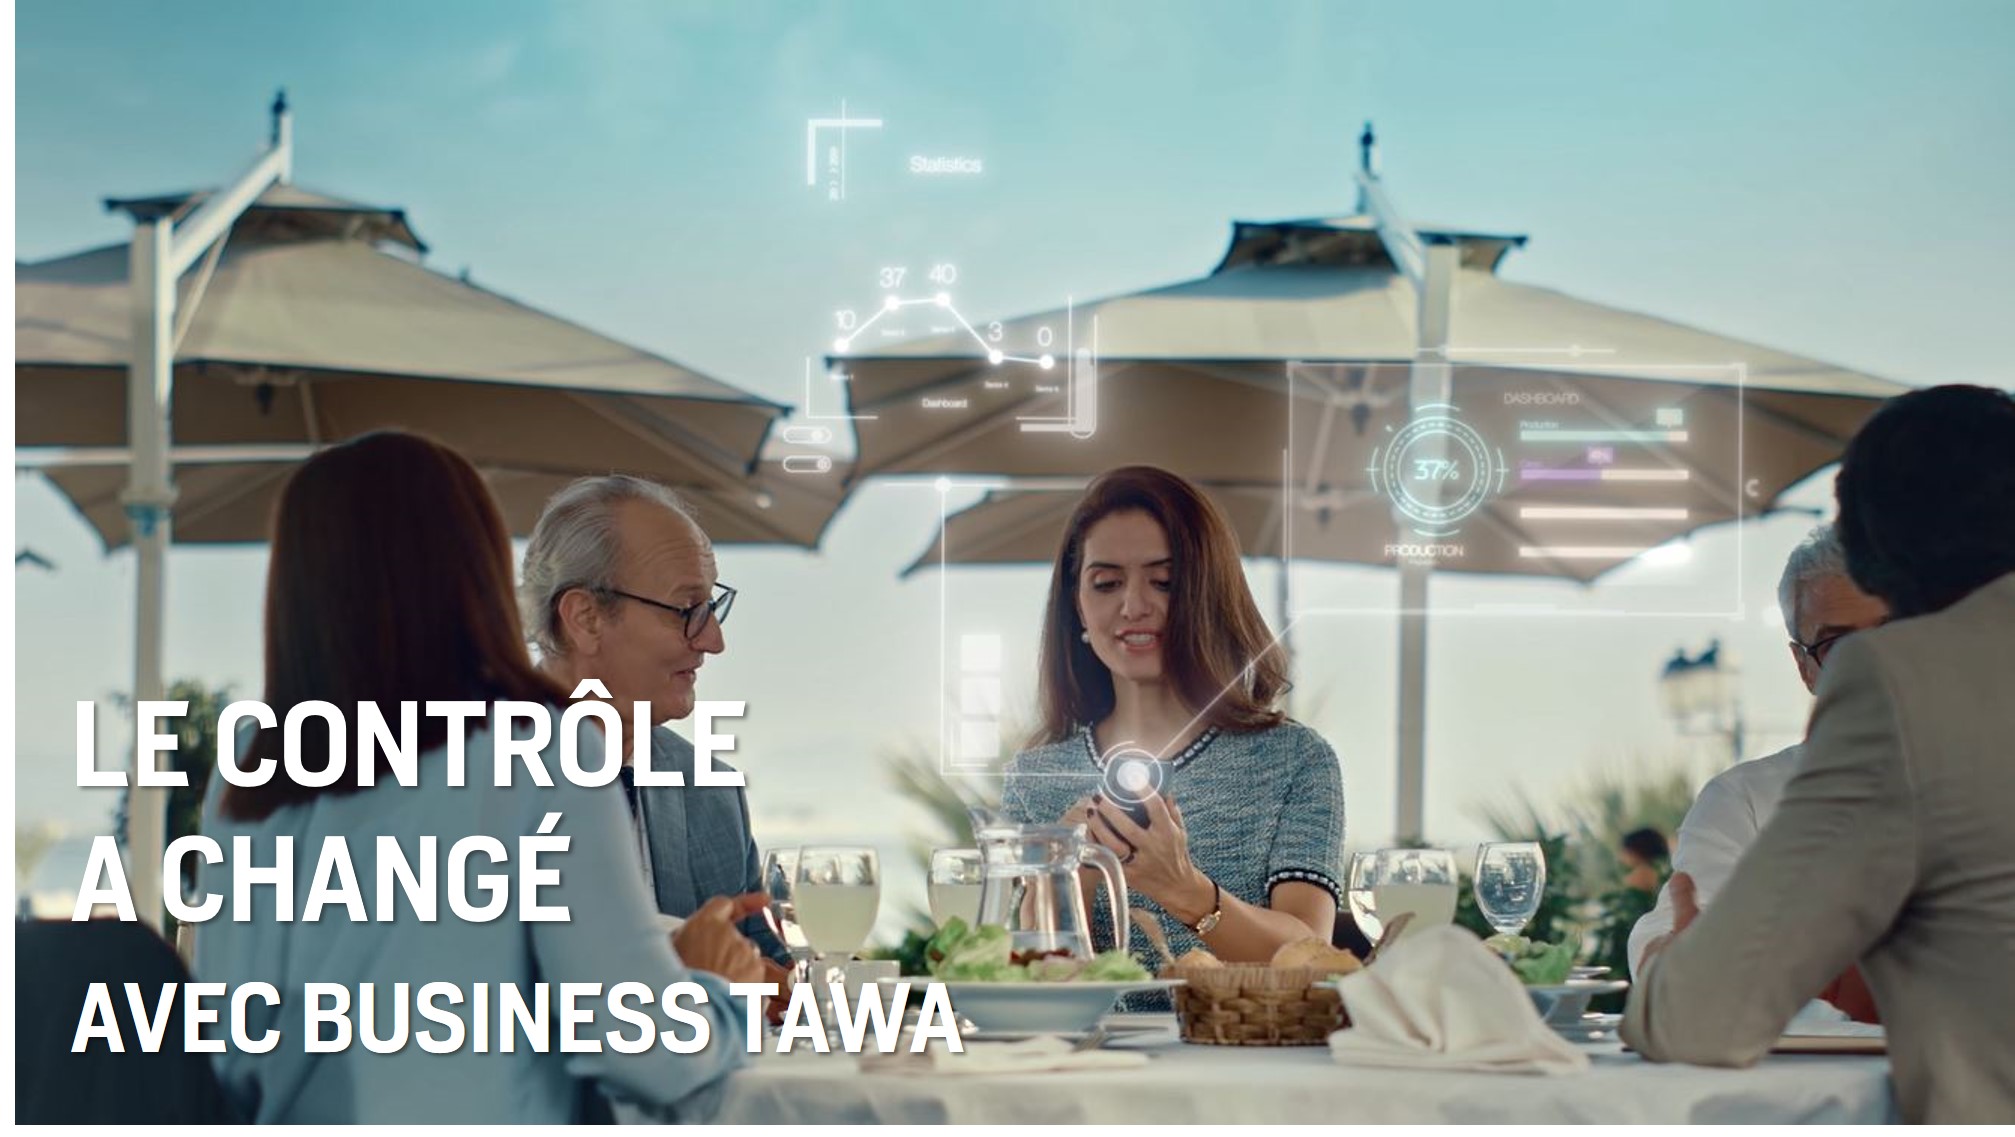 Le Contrôle change avec Business Tawa